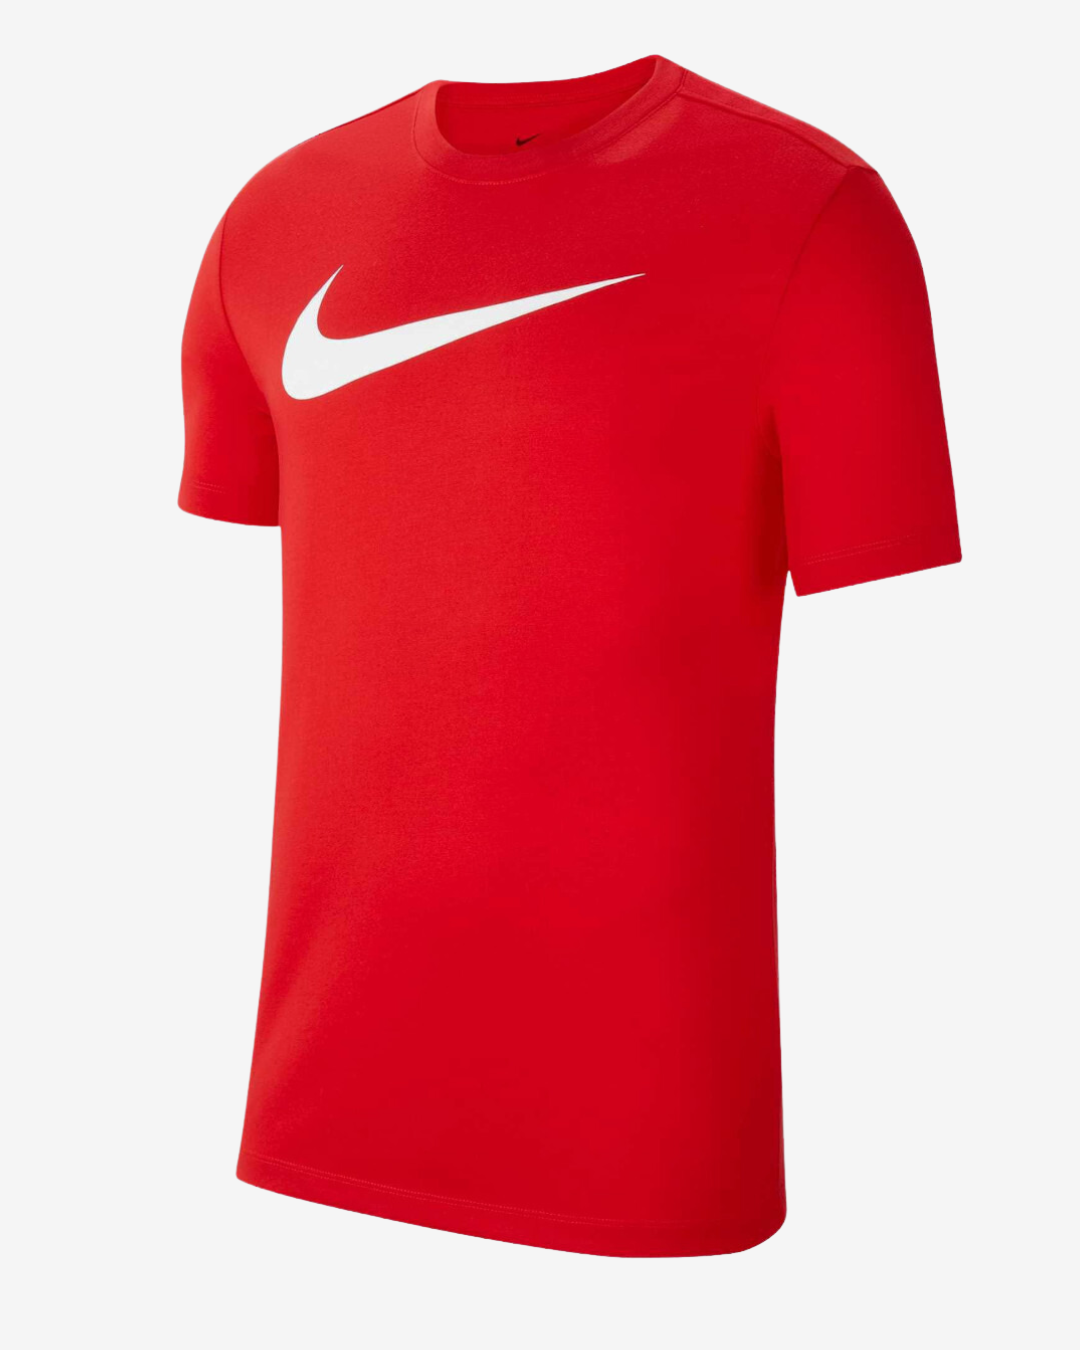 Billede af Nike Dri-fit park 20 t-shirt - Rød - Str. 3XL - Modish.dk